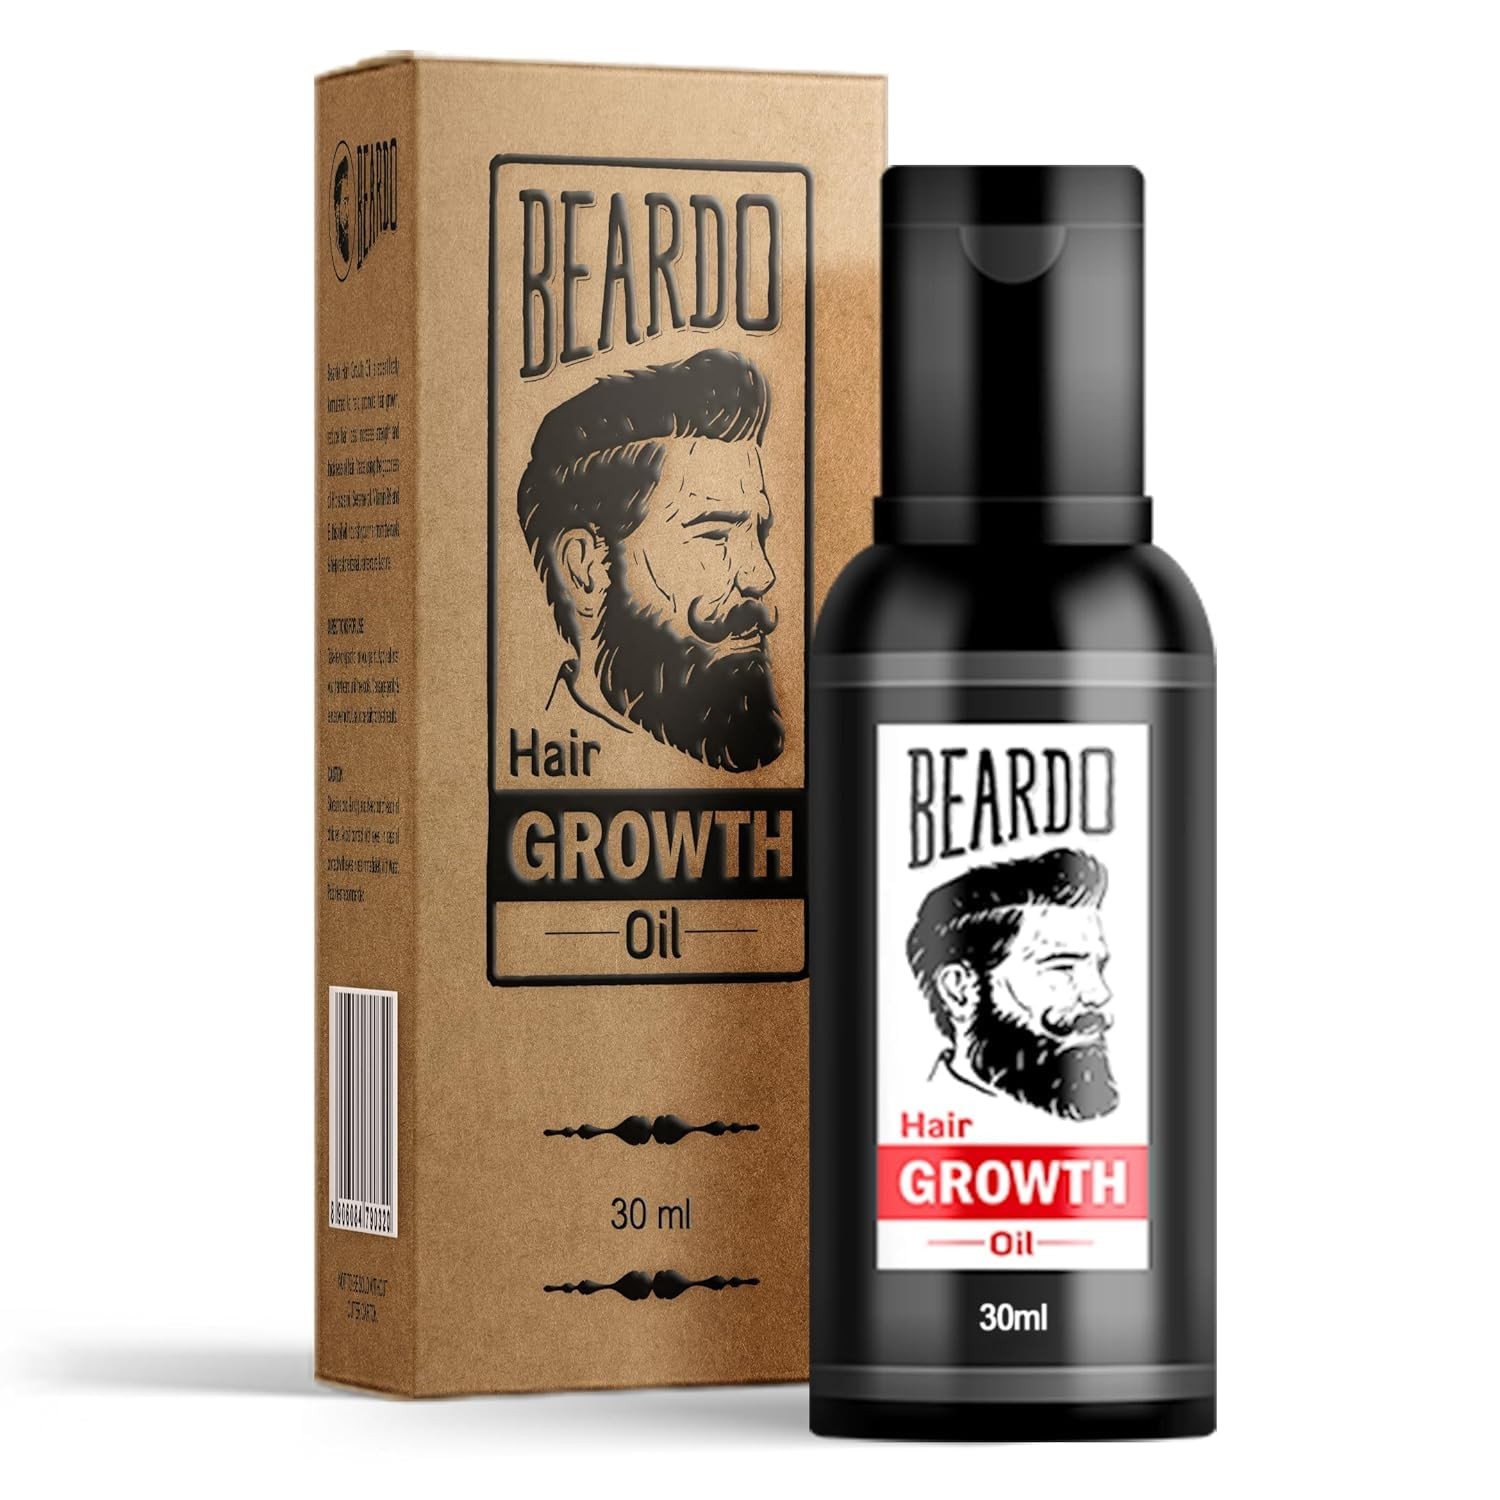 Beardo Beard & Hair Growth Oil, 50ml | Natural Hair Oil for Thicker & Longer Beard | Beard Oil for Uneven, Patchy & Fast Beard Growth | Growth Oil for Stronger & Fuller Beard Hair